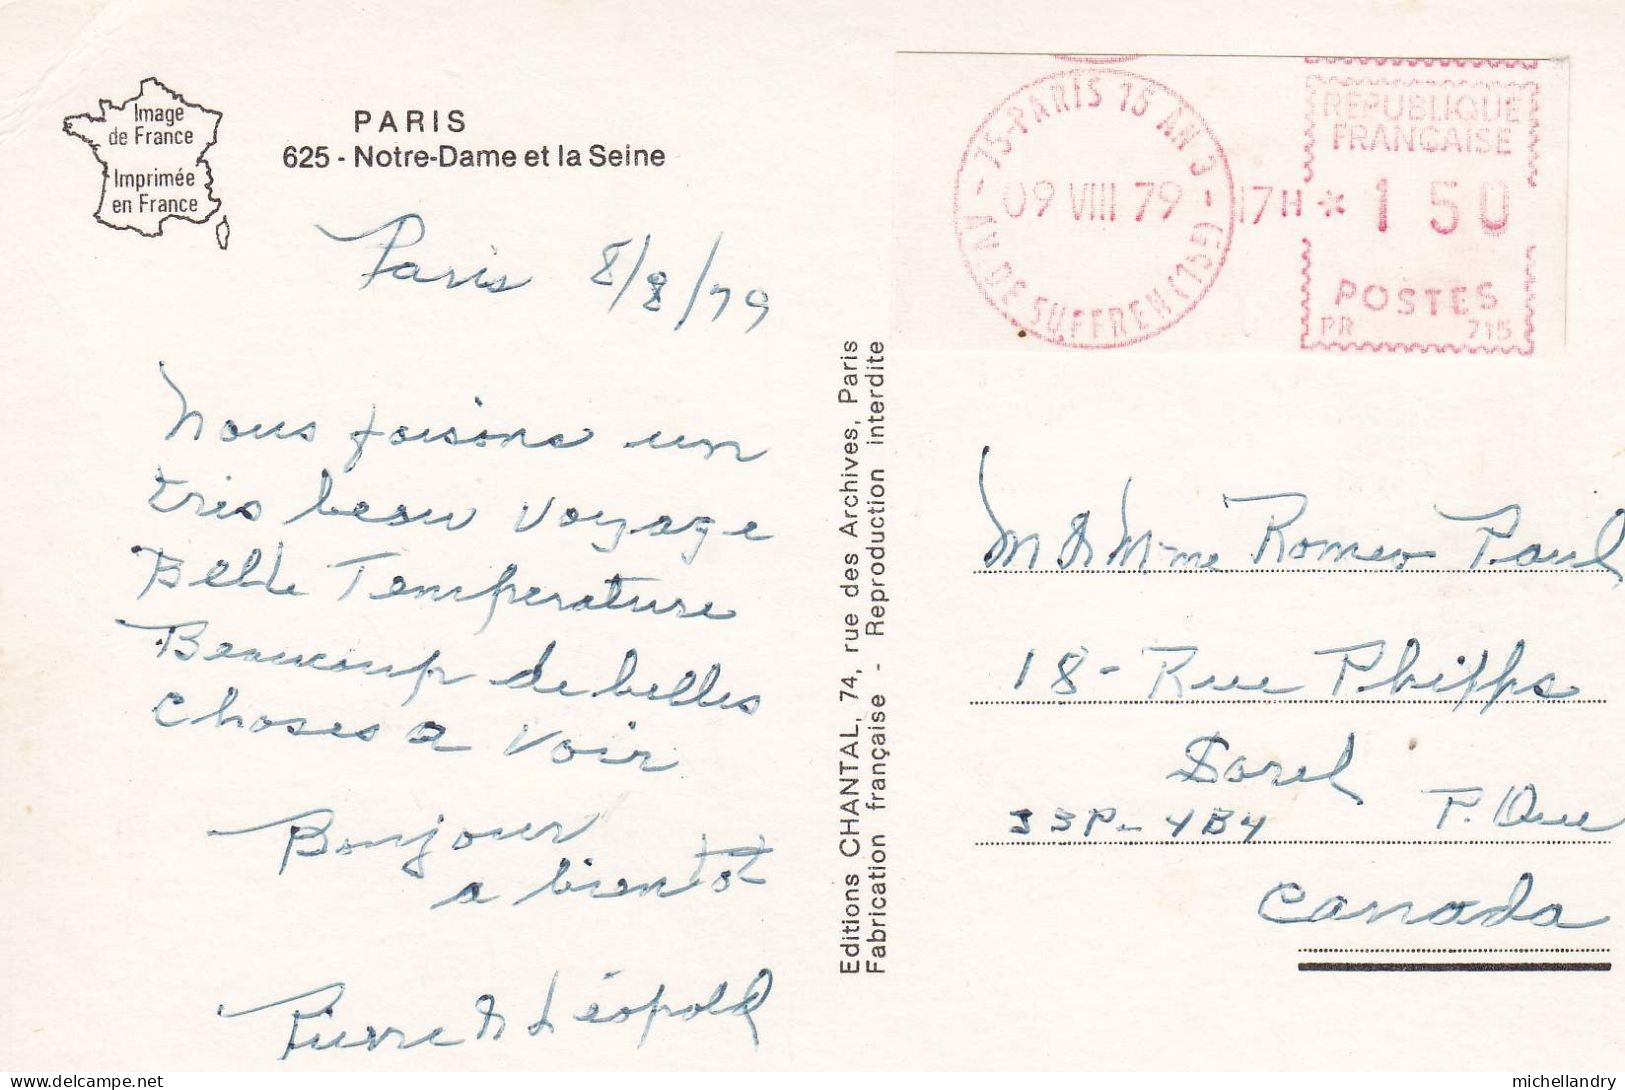 Carte Postal (123235) Paris Notre-Dame Et La Seine 09 VIII 79 Timbre 1,50RF Avec écriture - Notre Dame De Paris